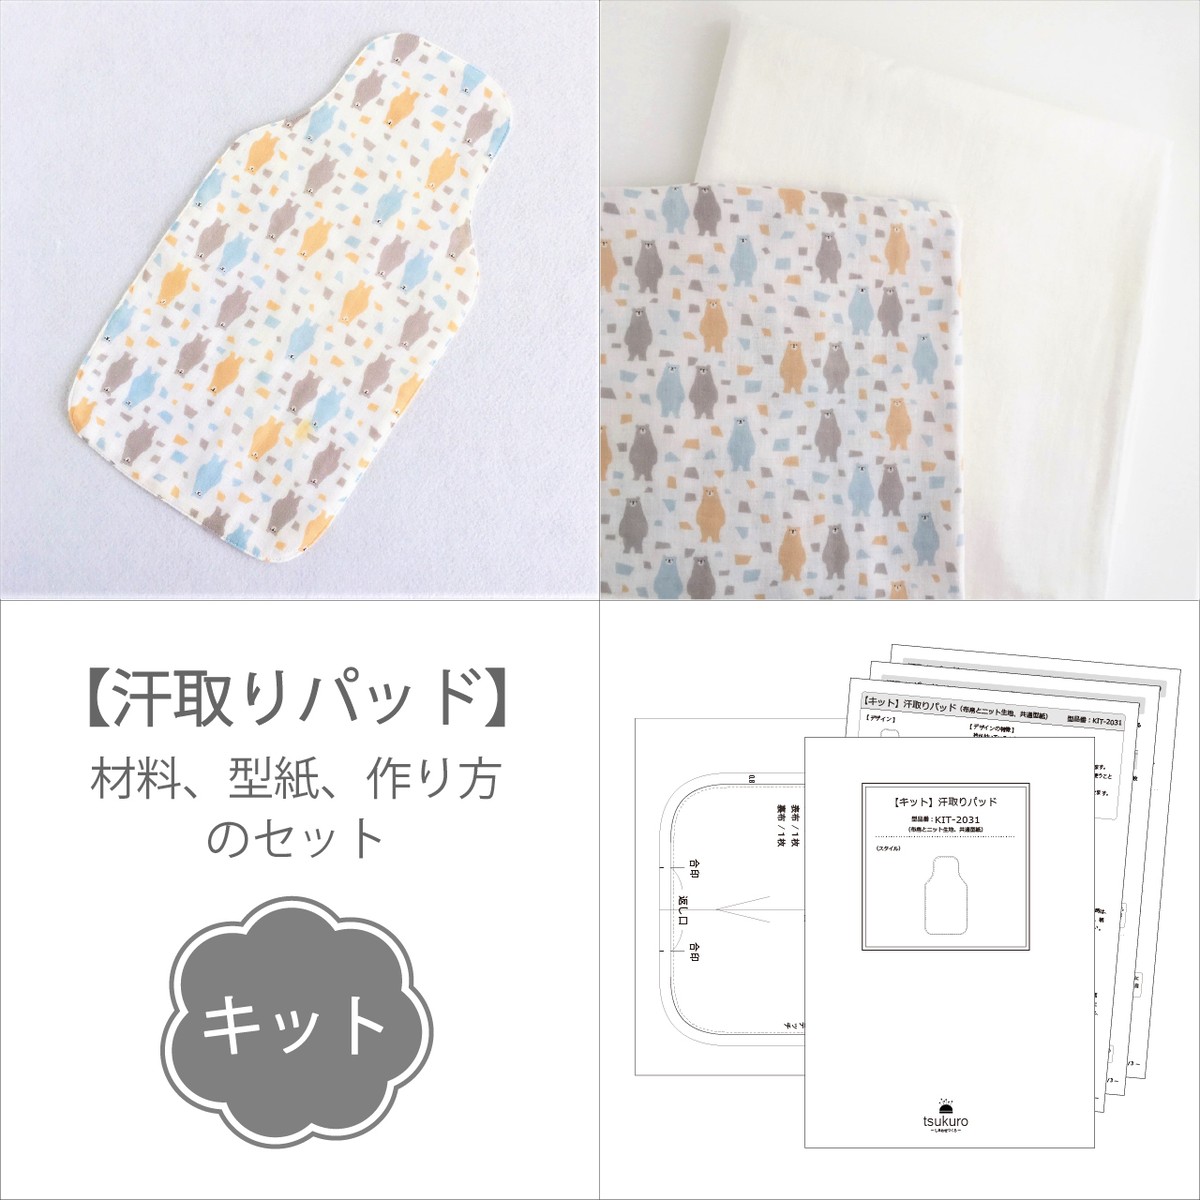 キット 二重ガーゼの汗取りパッド 材料と型紙と作り方のセット Kit 34 子供服の型紙ショップ Tsukuro ツクロ